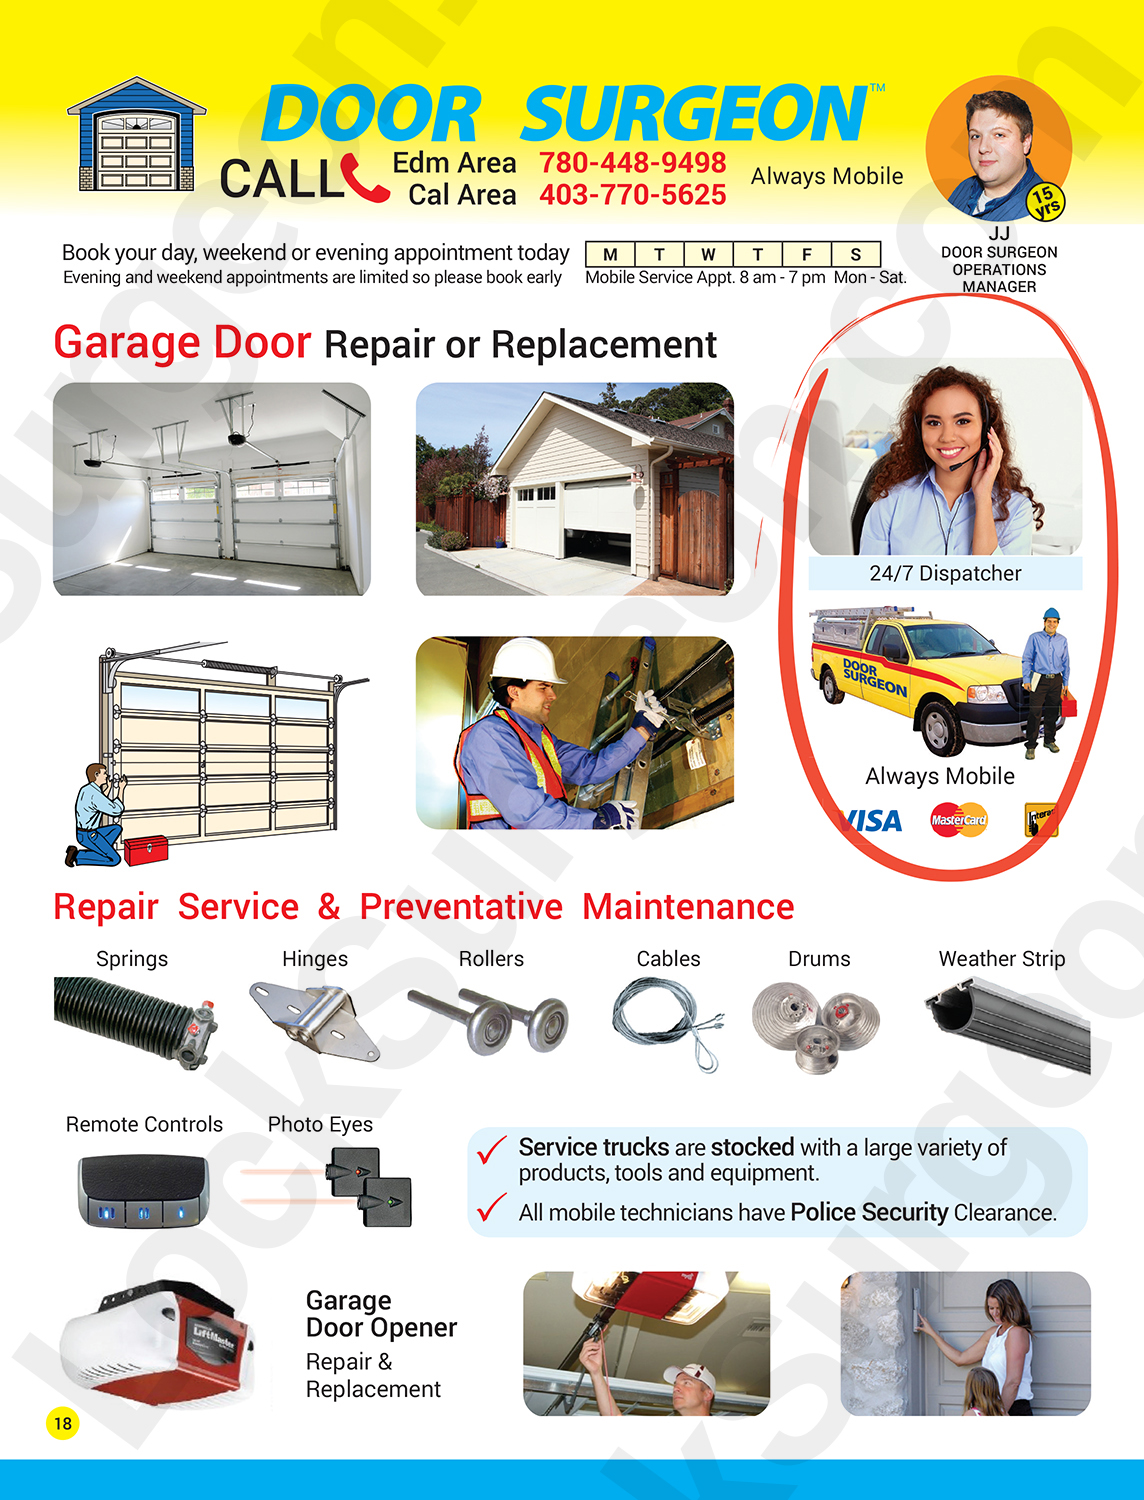 Lock Surgeon garage door replacement services professional expert garage door repair technicians.